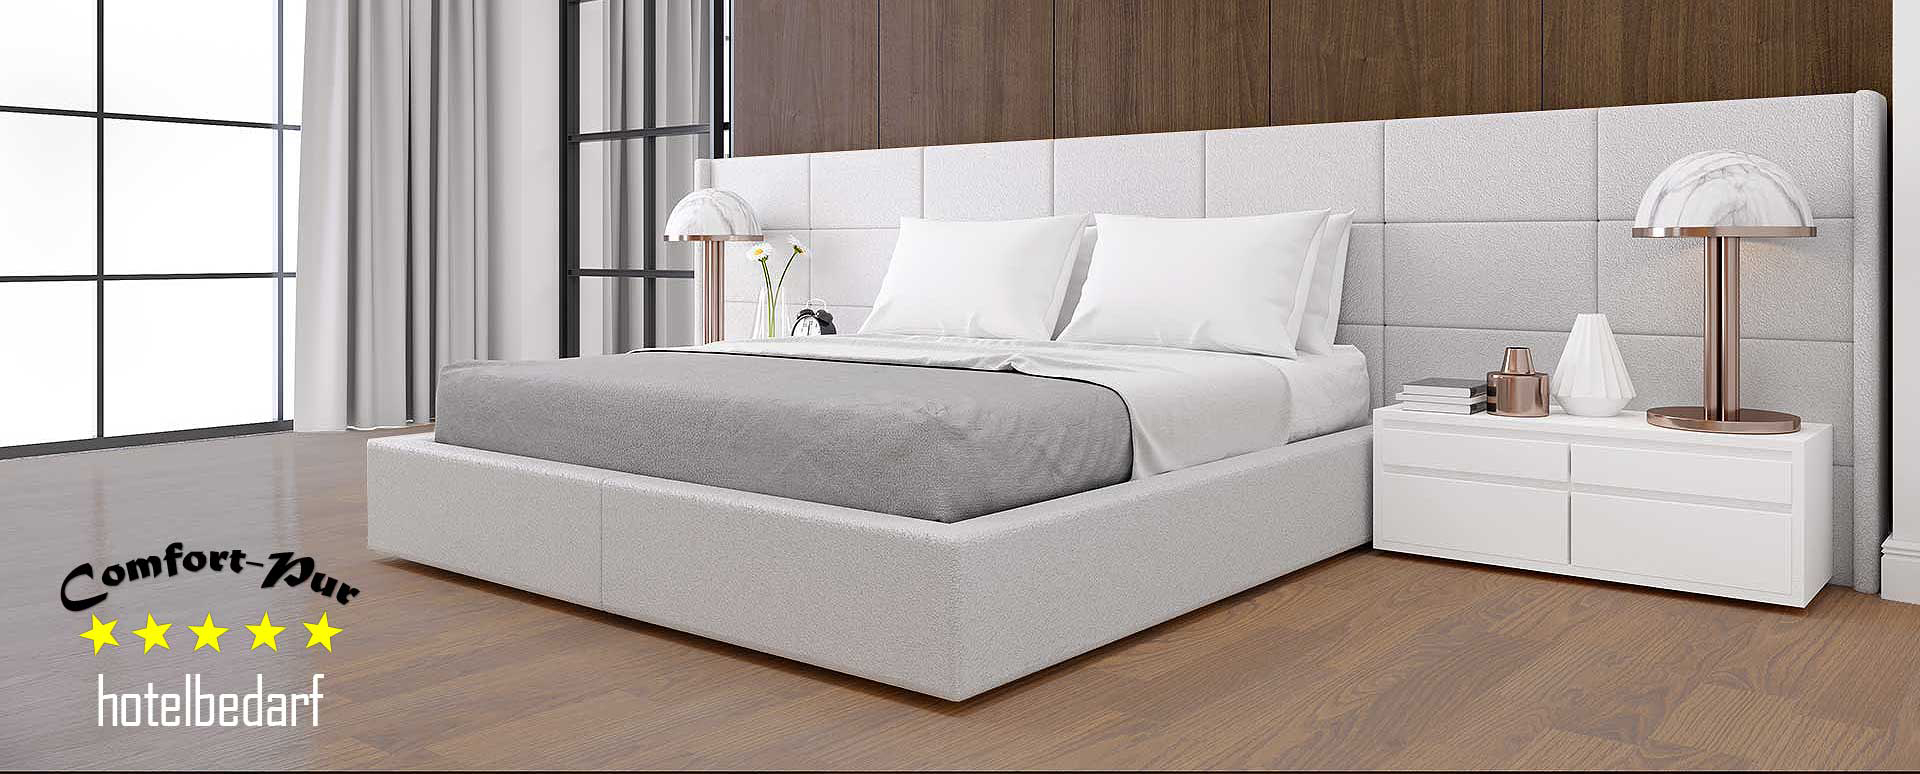 Comfort-Pur ist Hersteller von verschiedenen Bettarten und Matratzen